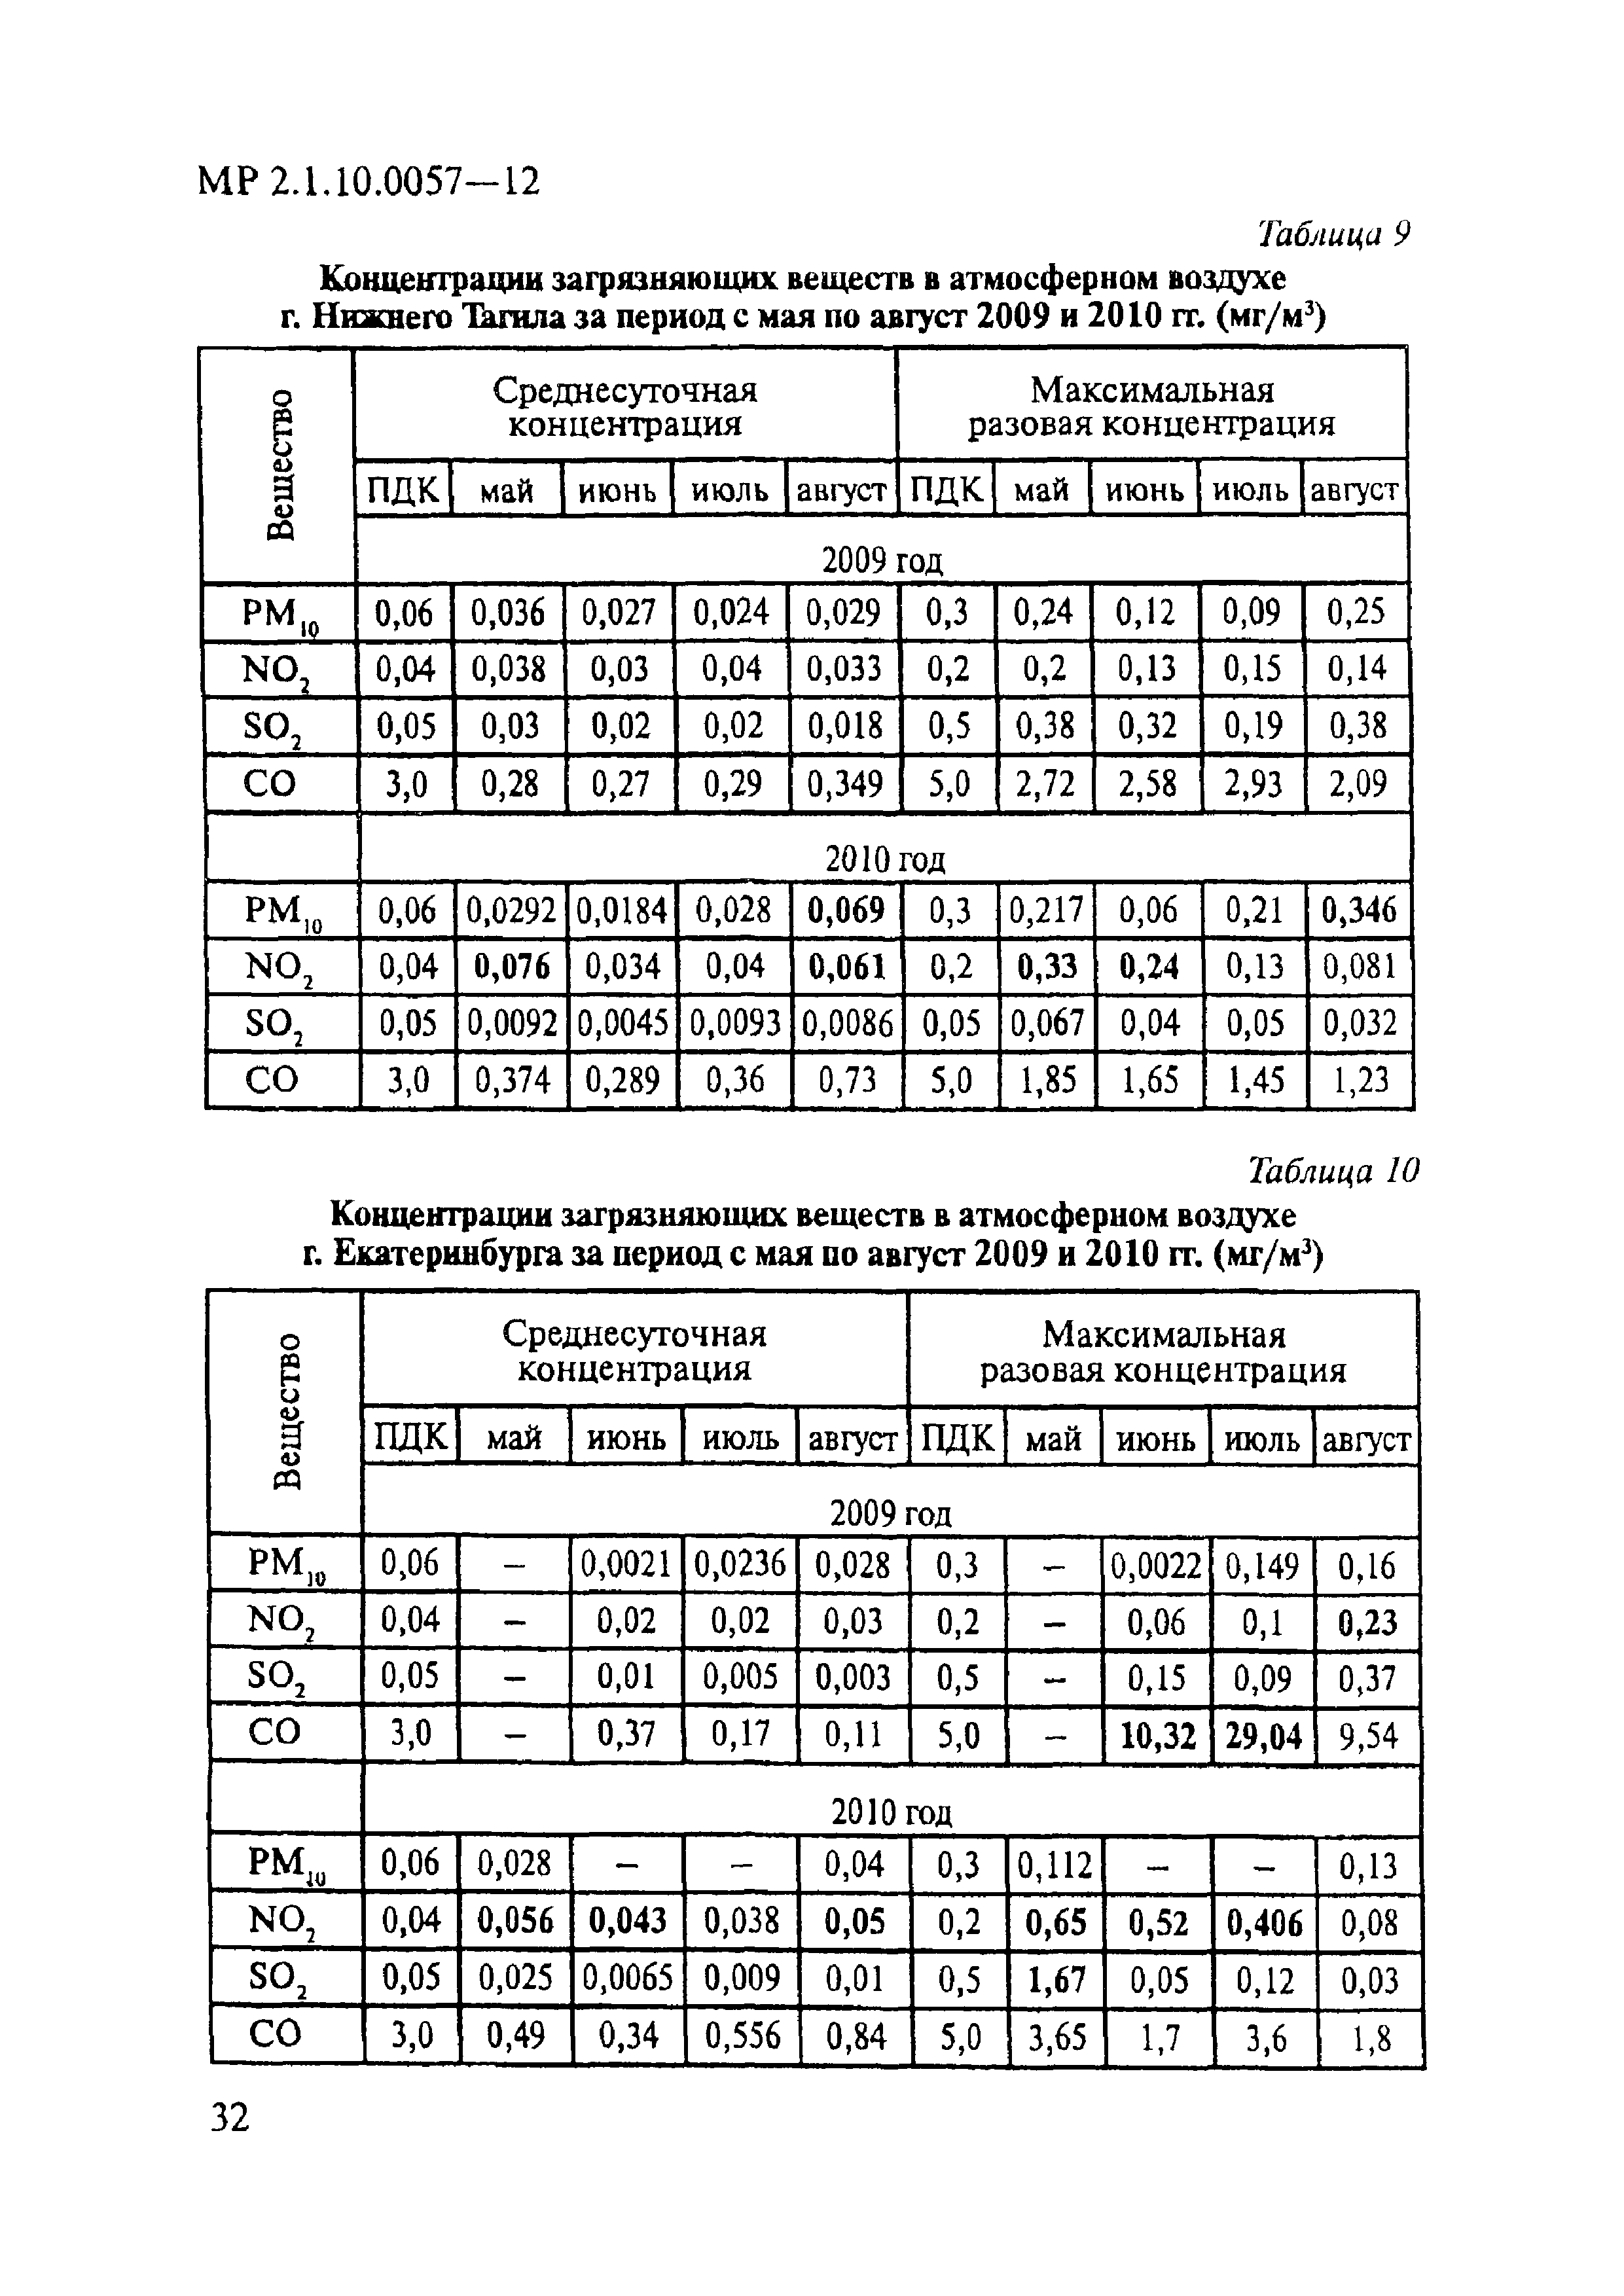 МР 2.1.10.0057-12